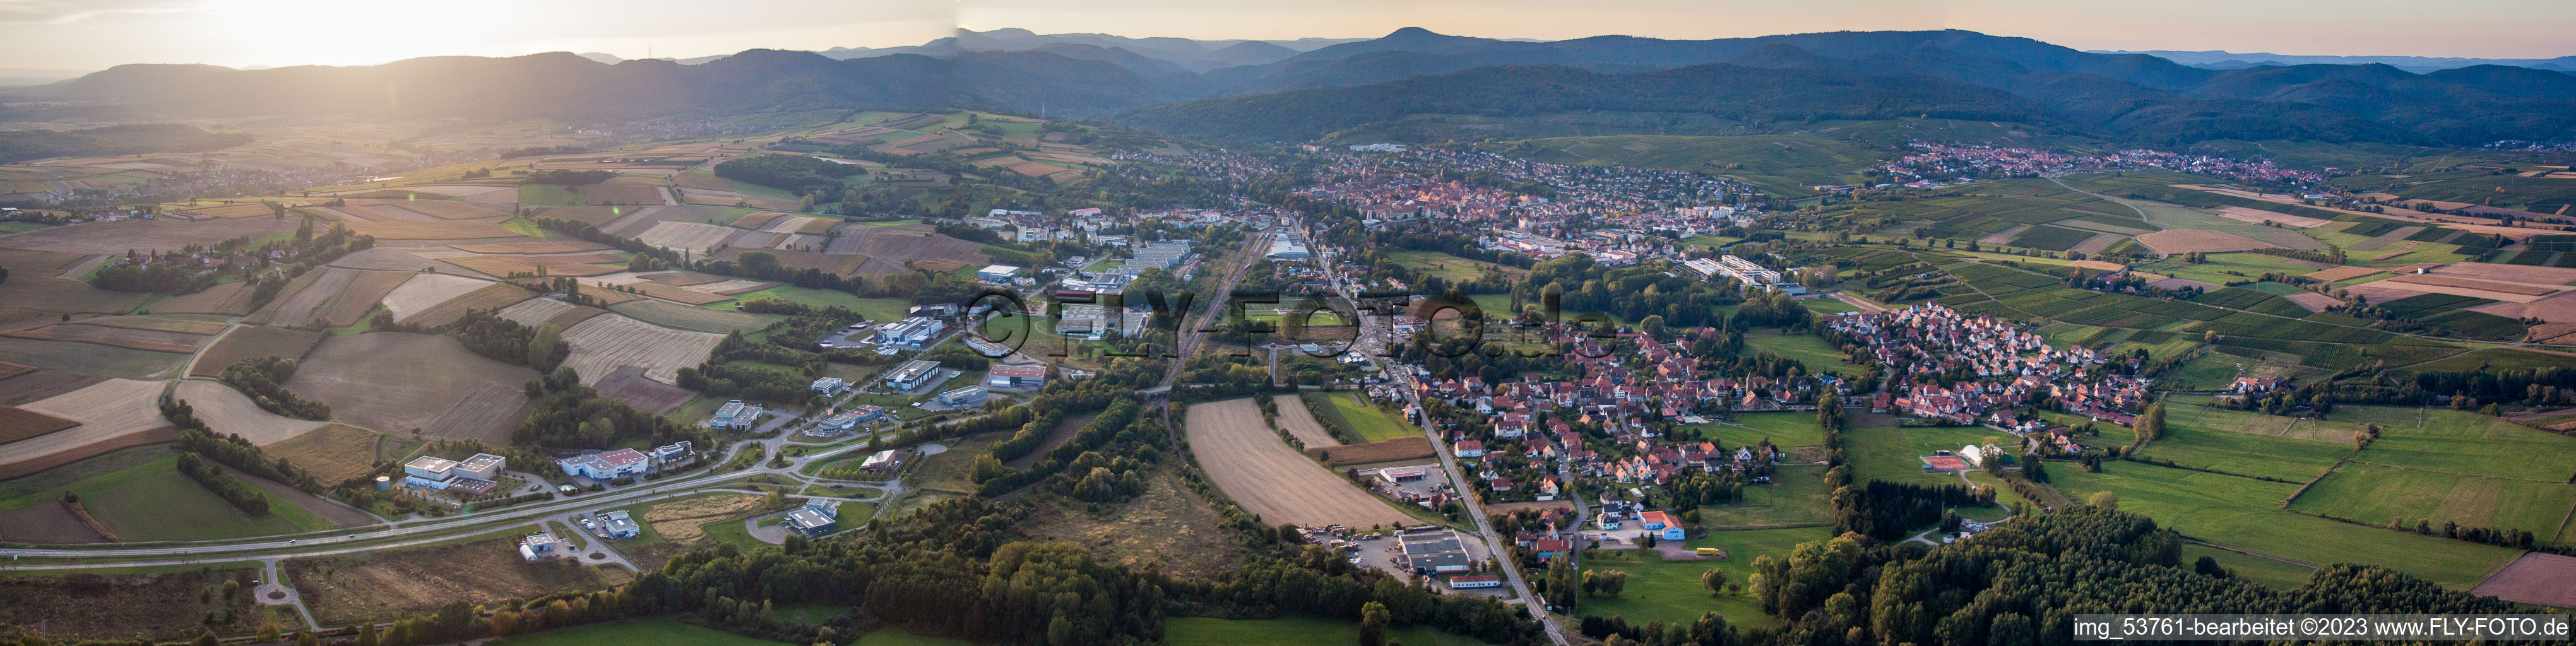 Vue aérienne de Panorama à Altenstadt dans le département Bas Rhin, France